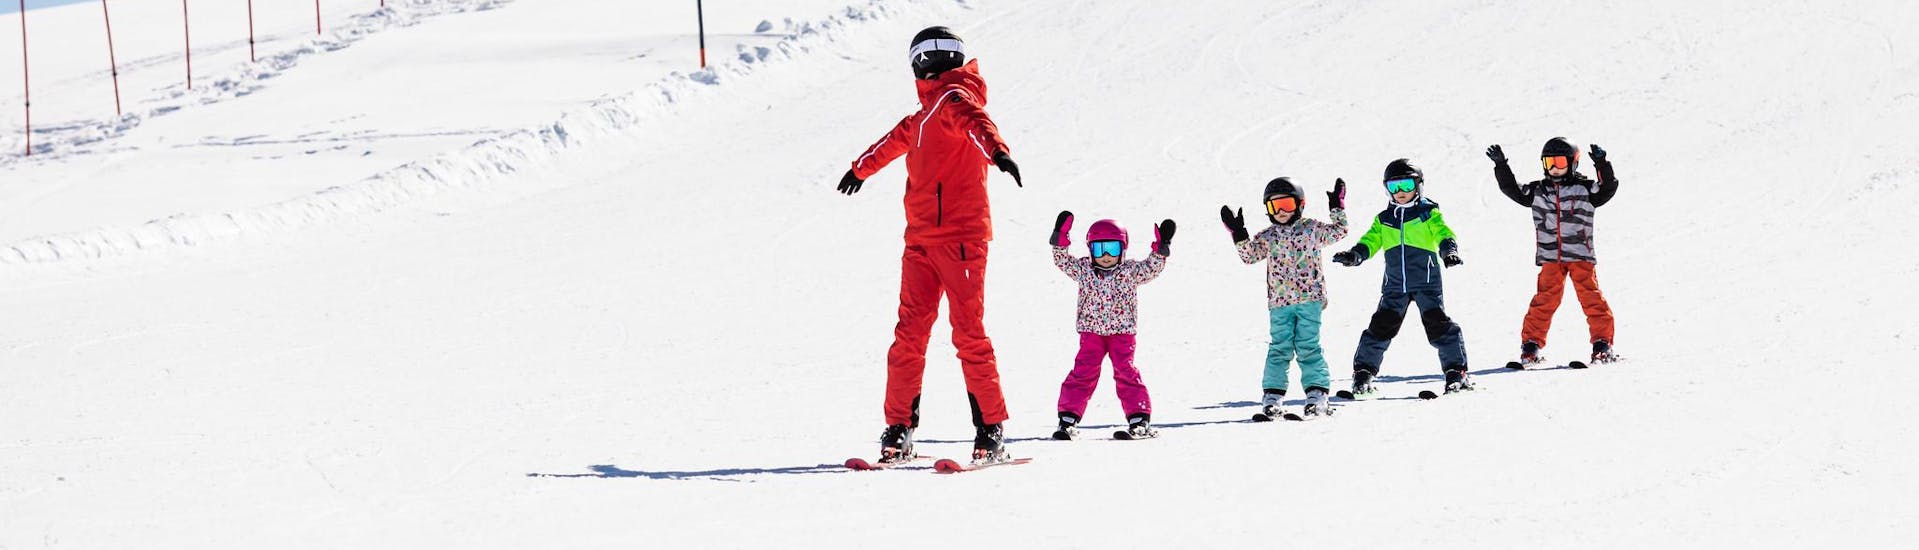 Skileraar en kinderen genieten van een skiles bij een skischool in de buurt van Rome.